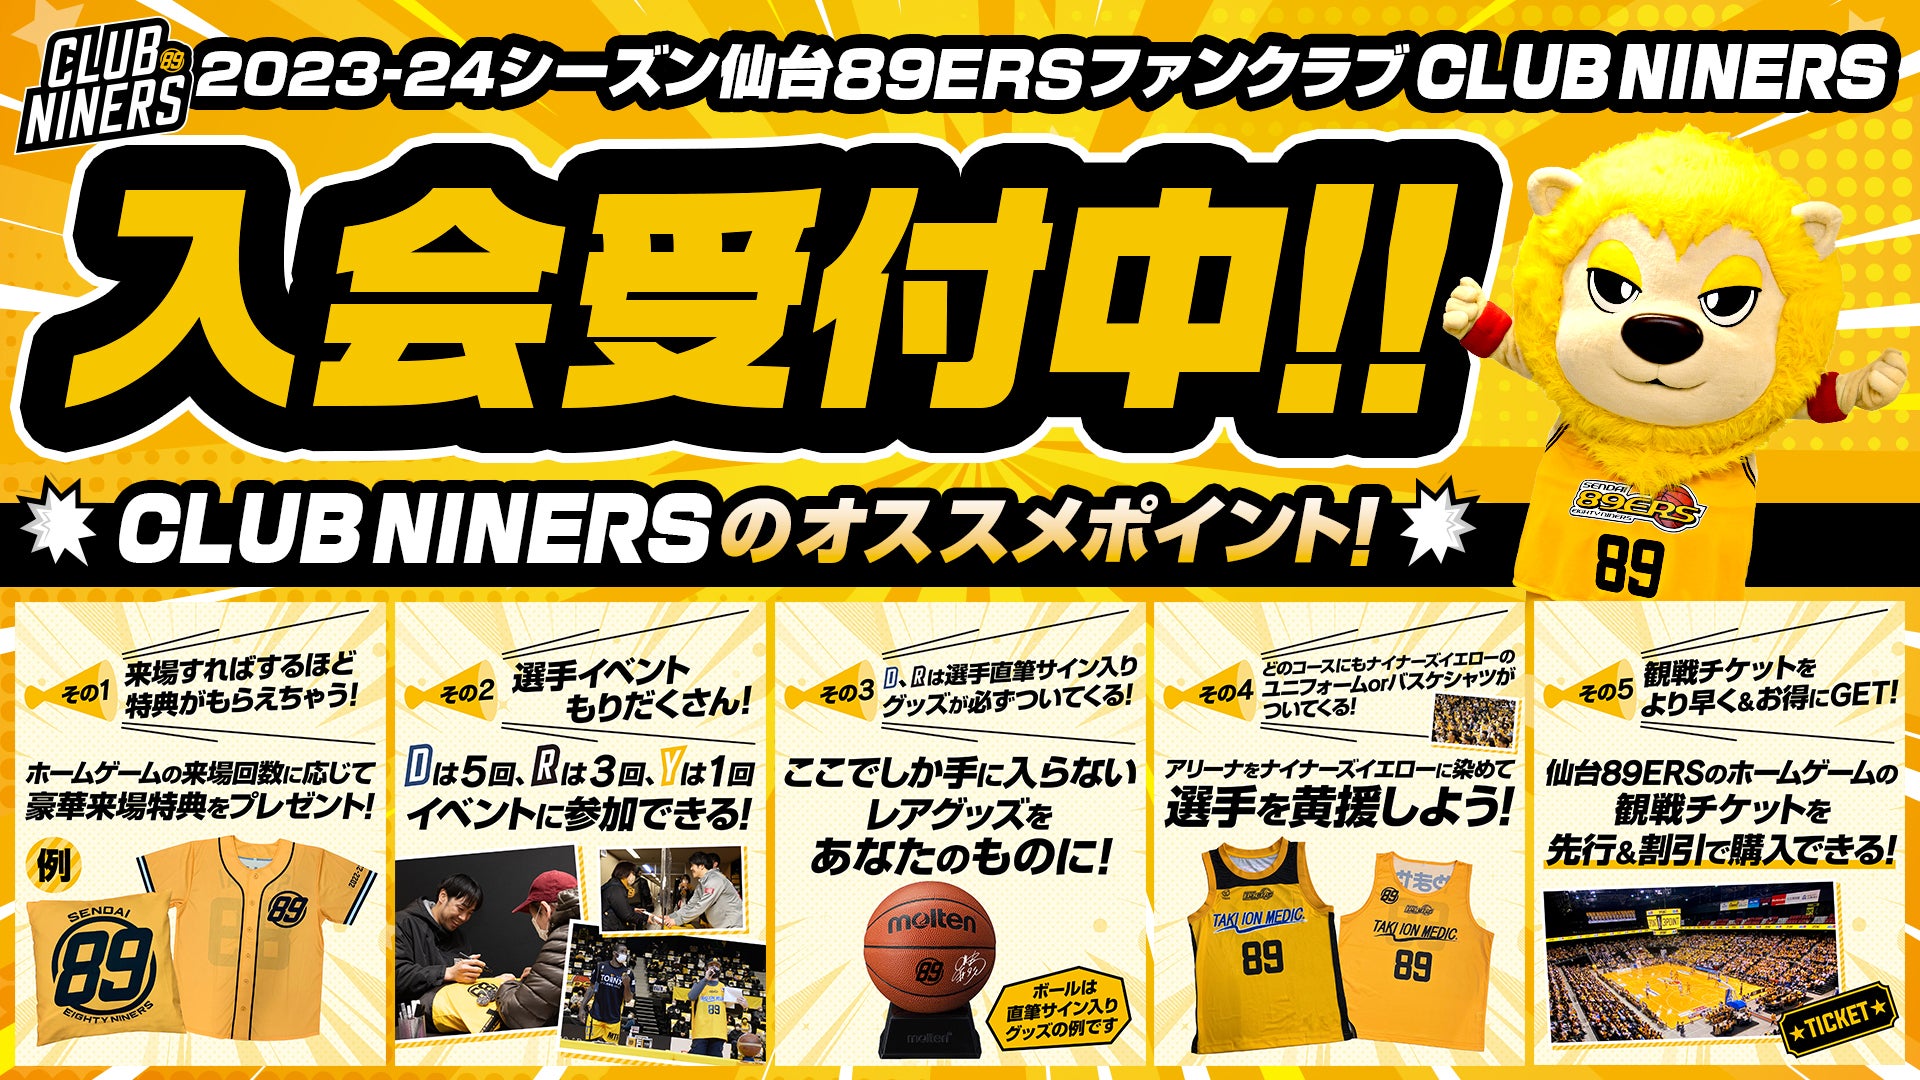 8/19(土)情報更新※【CLUB NINERS】8/15(火)までのご入会で仙台開幕戦前 